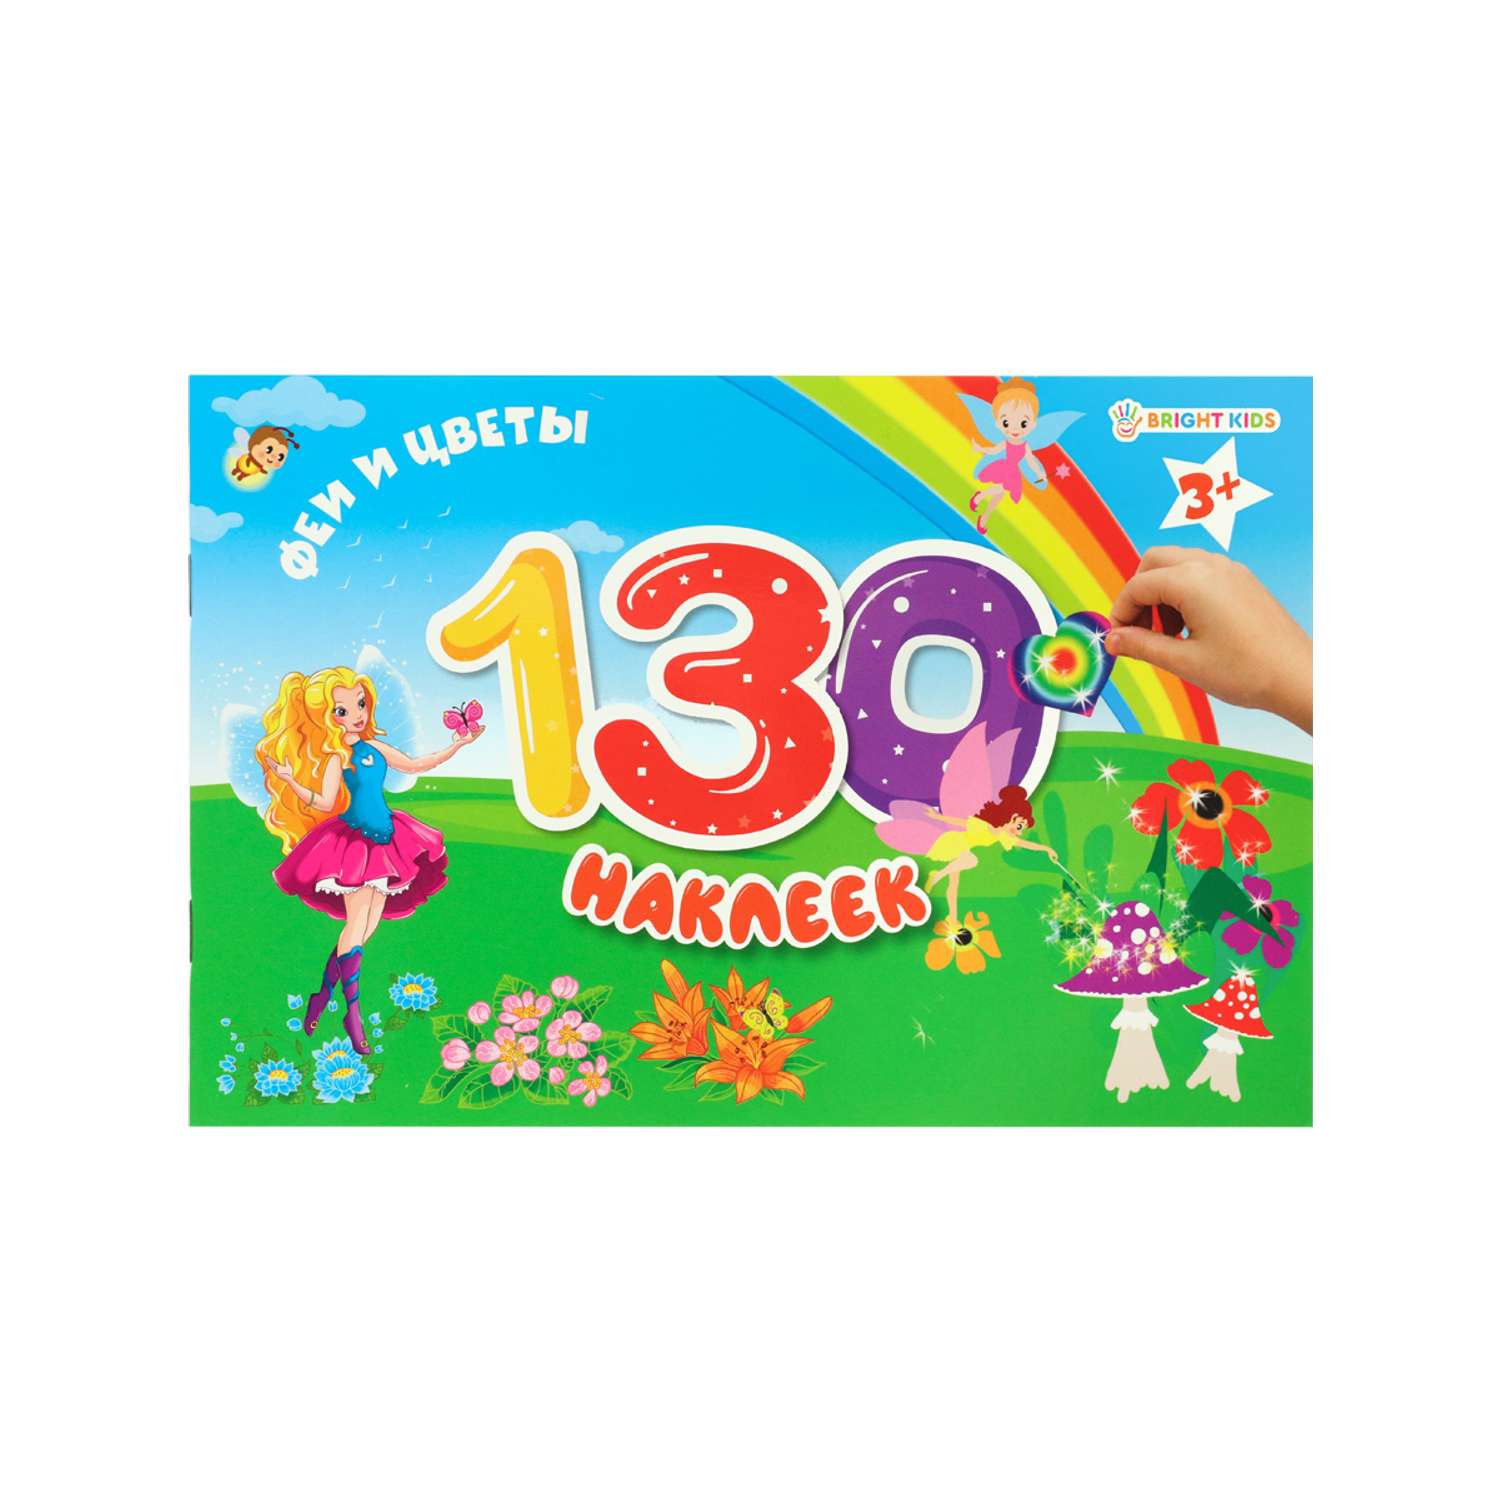 Альбом для наклеек Bright Kids 130 наклеек Феи и цветы 4 листа + 4 листа с наклейками - фото 1